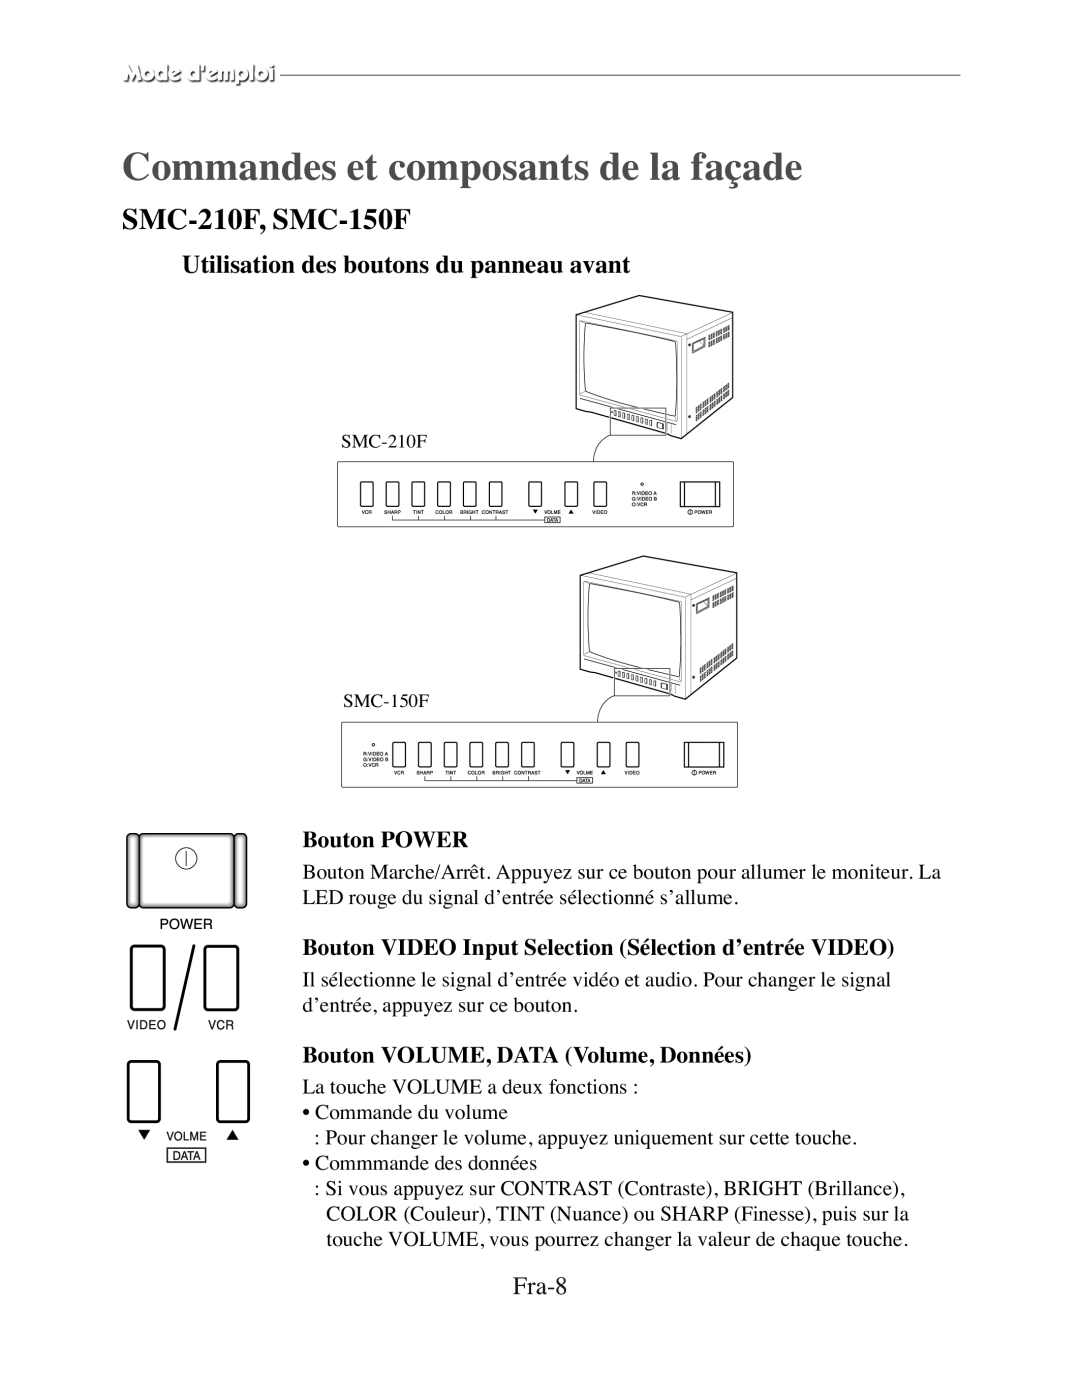 Samsung SMC-150FP Commandes et composants de la façade, Utilisation des boutons du panneau avant, Fra-8, Bouton POWER 